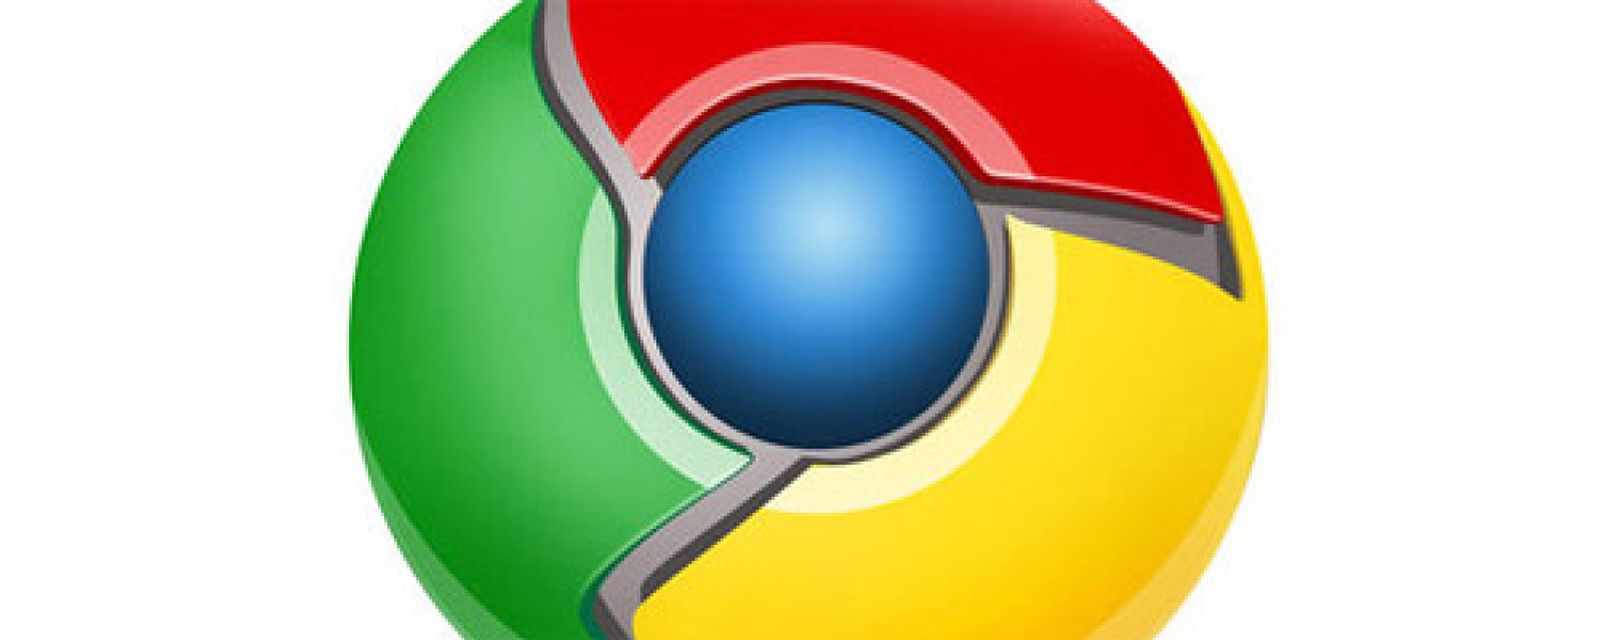 Foto: Google ofrece 2 millones de dólares a quienes encuentren errores en Chrome